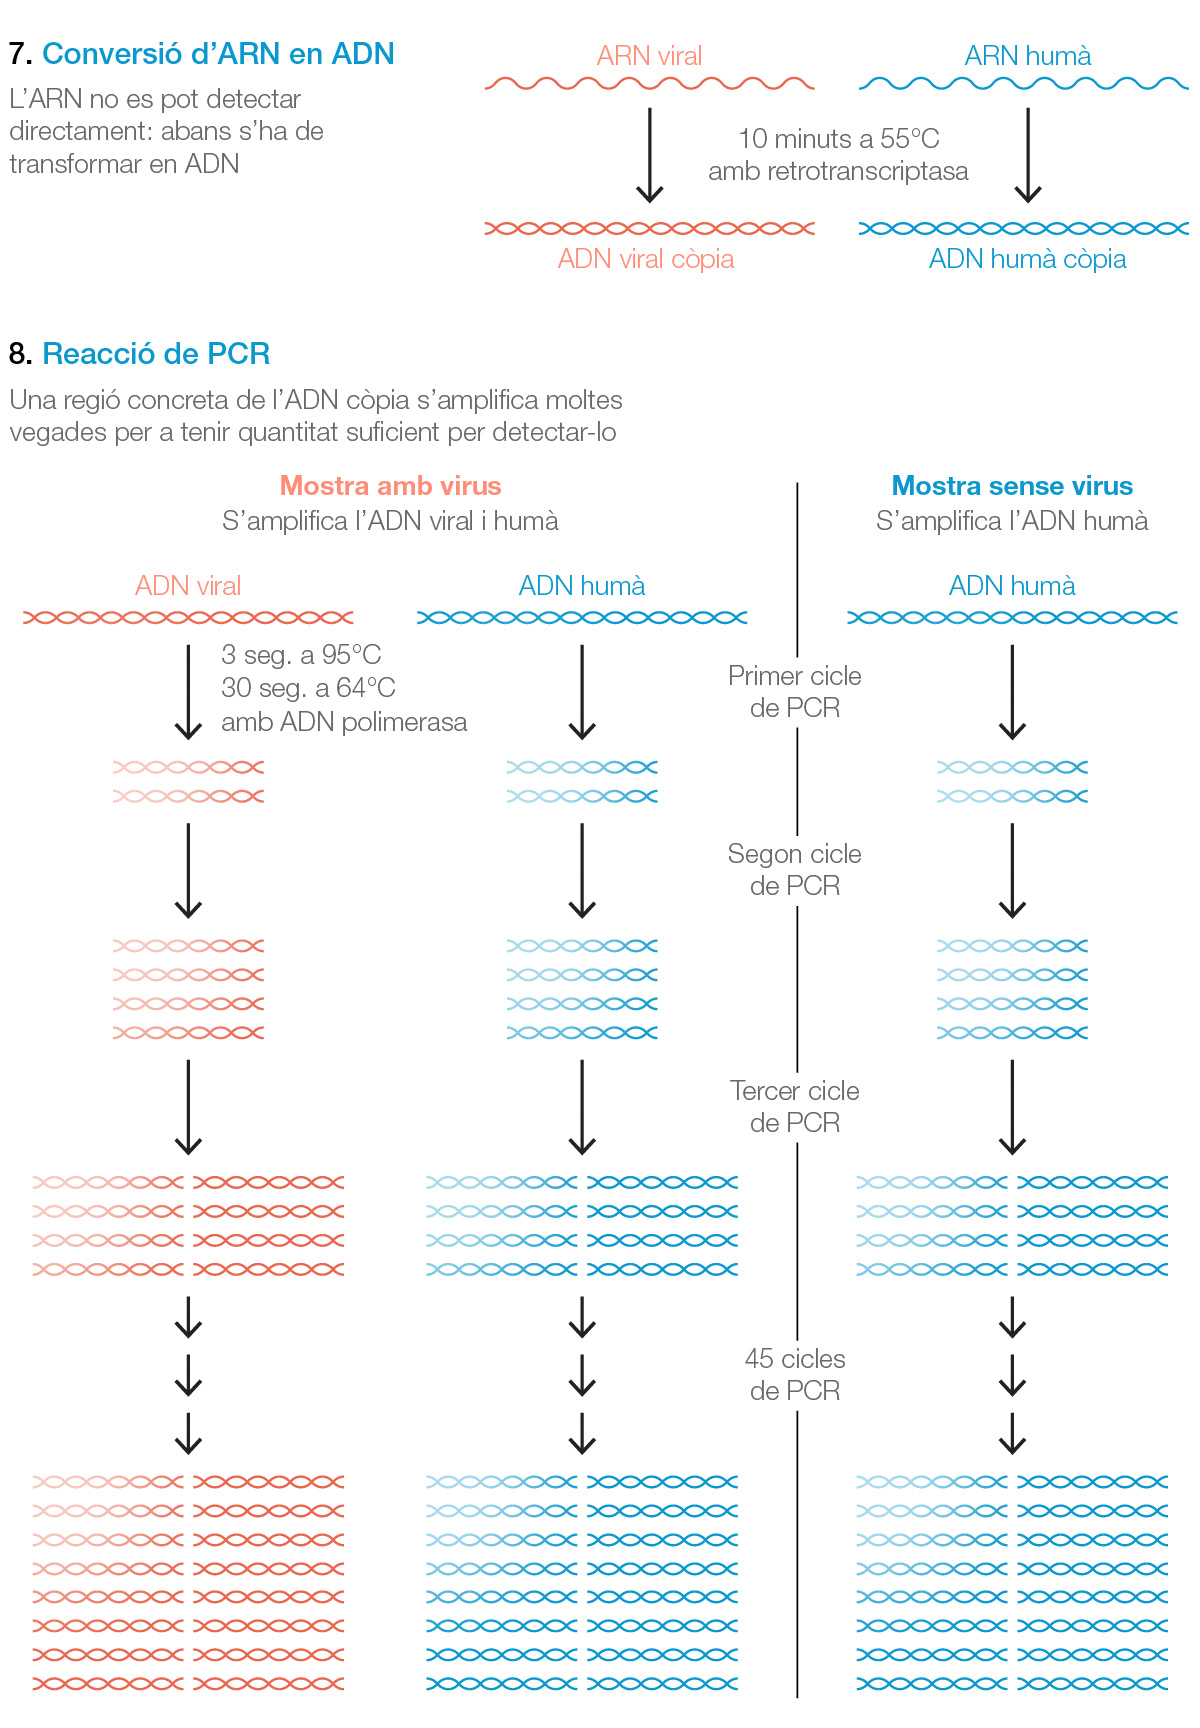 COnversión del ARN en ADN y PCR para amplificar y detectar la presencia del coronavirus